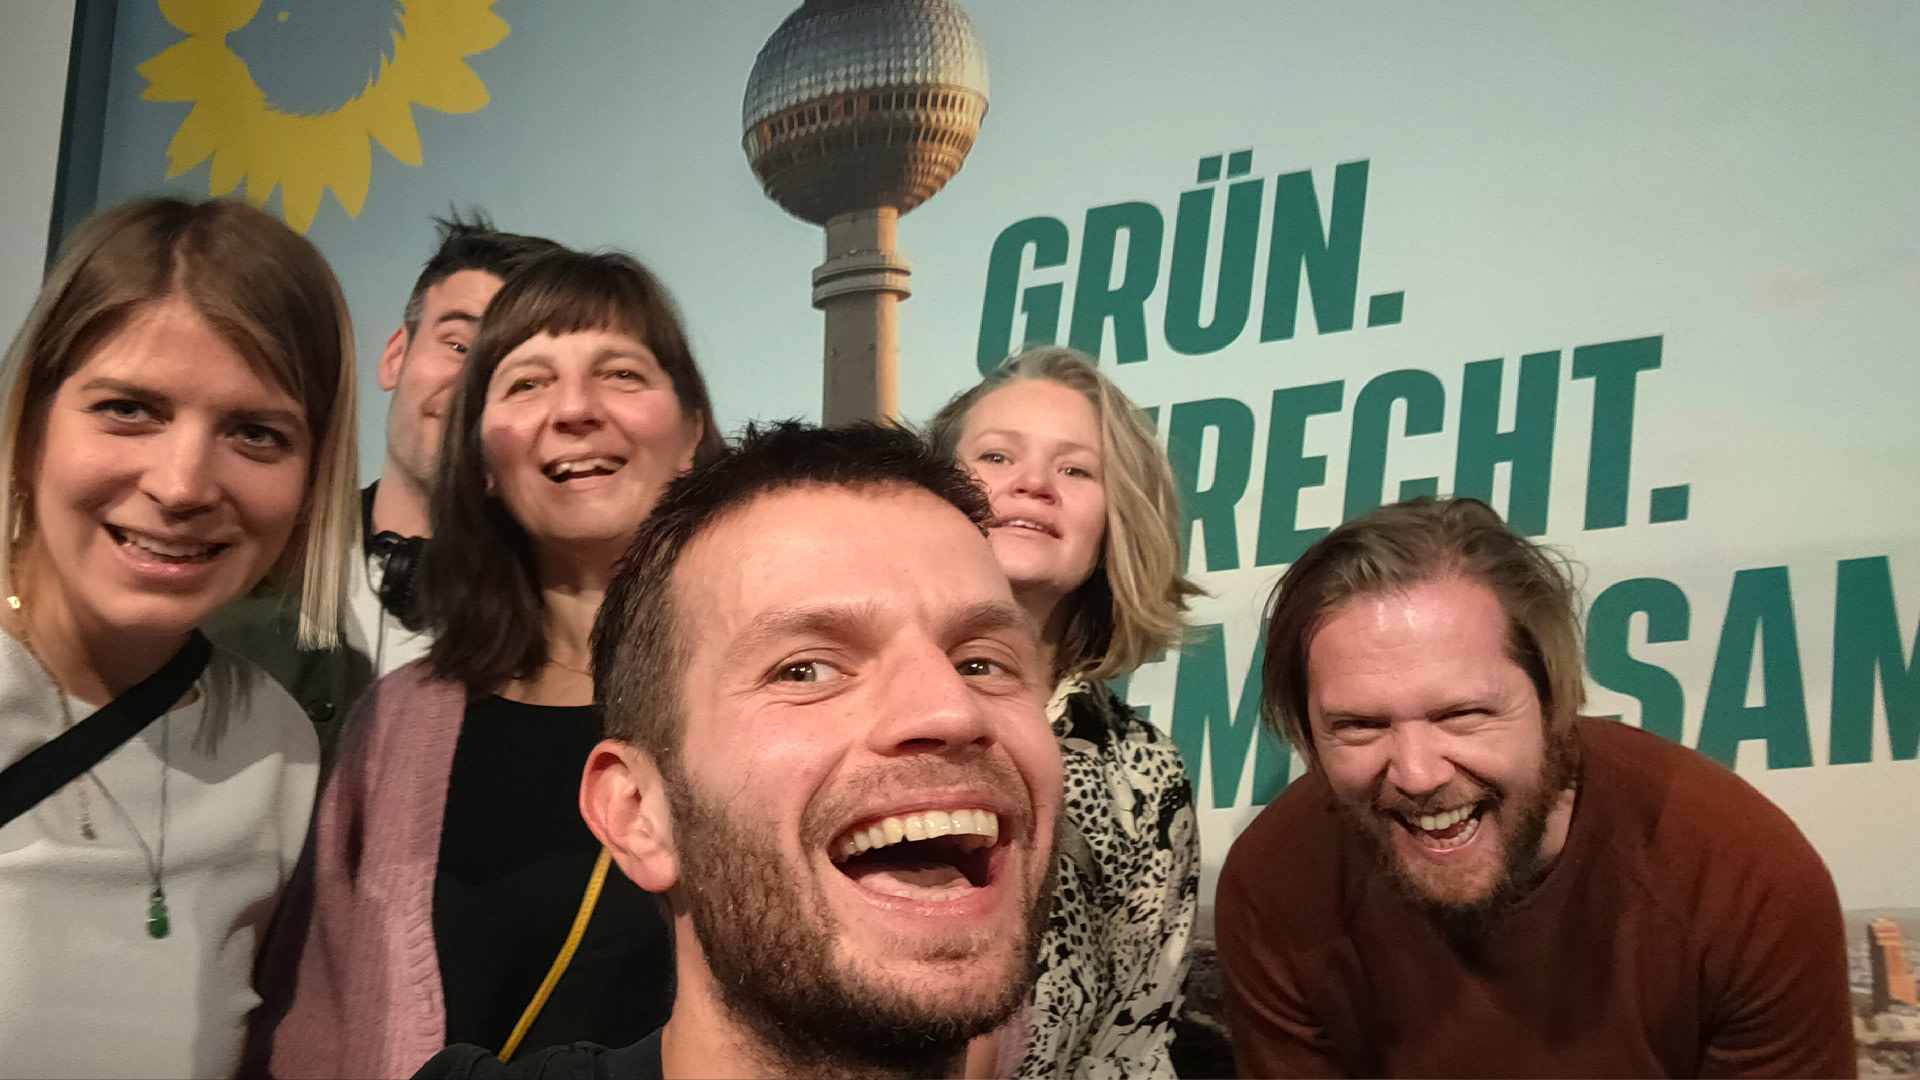 Sechs lachende Menschen aus dem Wigwam auf der Wahlparty der Grünen Berlin. Im Hintergrund ist das Backdrop zu sehen, auf welchem die Skyline von Berlin und die Headline `Grün. Gerecht. Gemeinsam.` zu sehen ist.